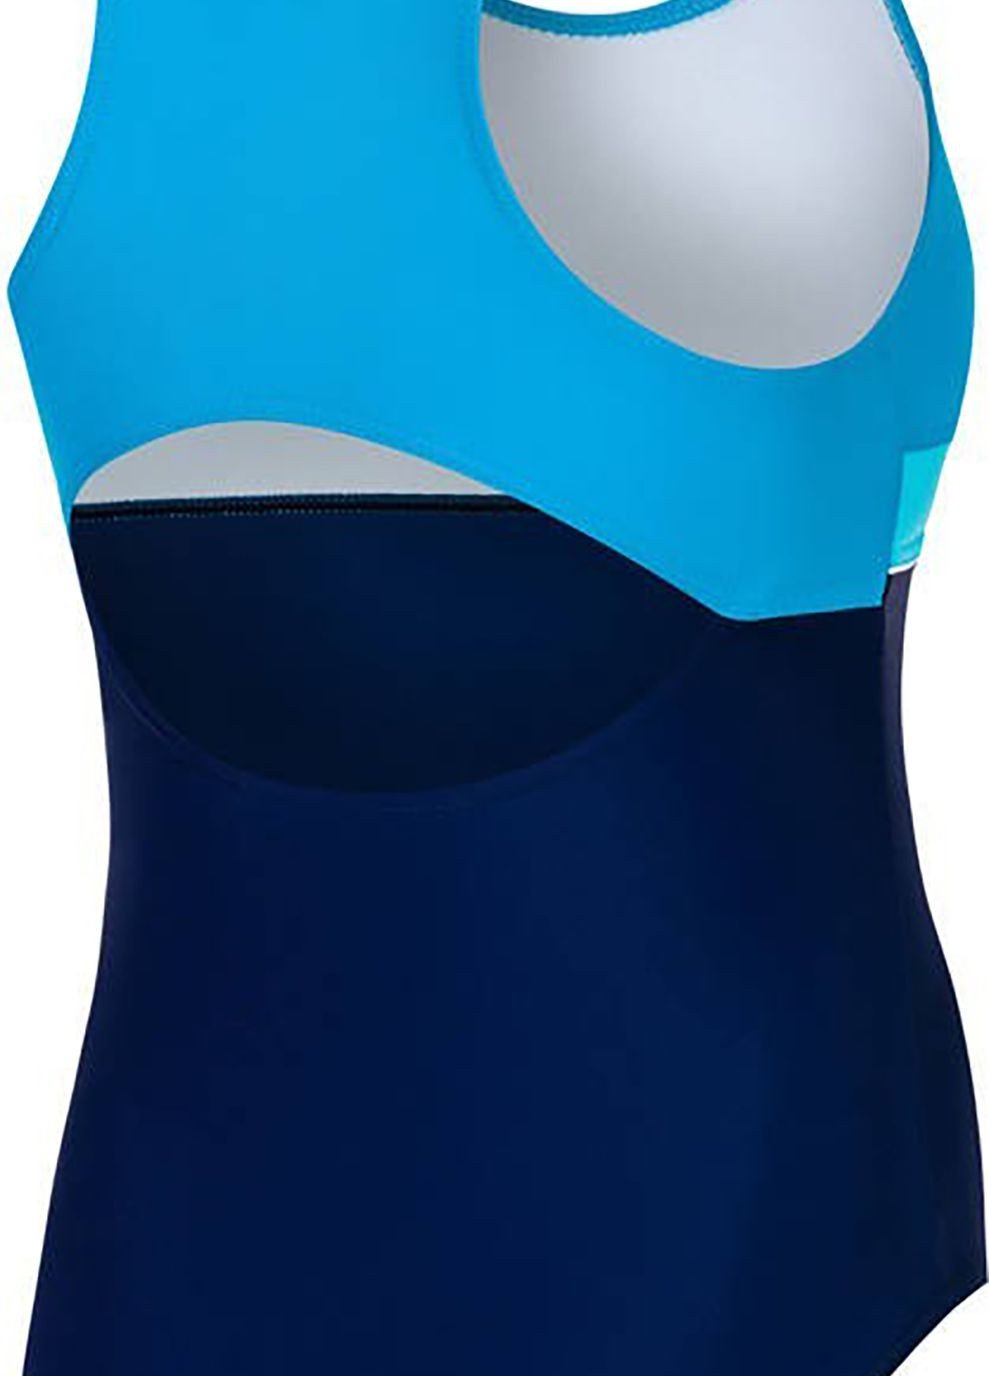 Комбинированный демисезонный купальник для девочек emily 4105 темно-синий, голубой дет Aqua Speed